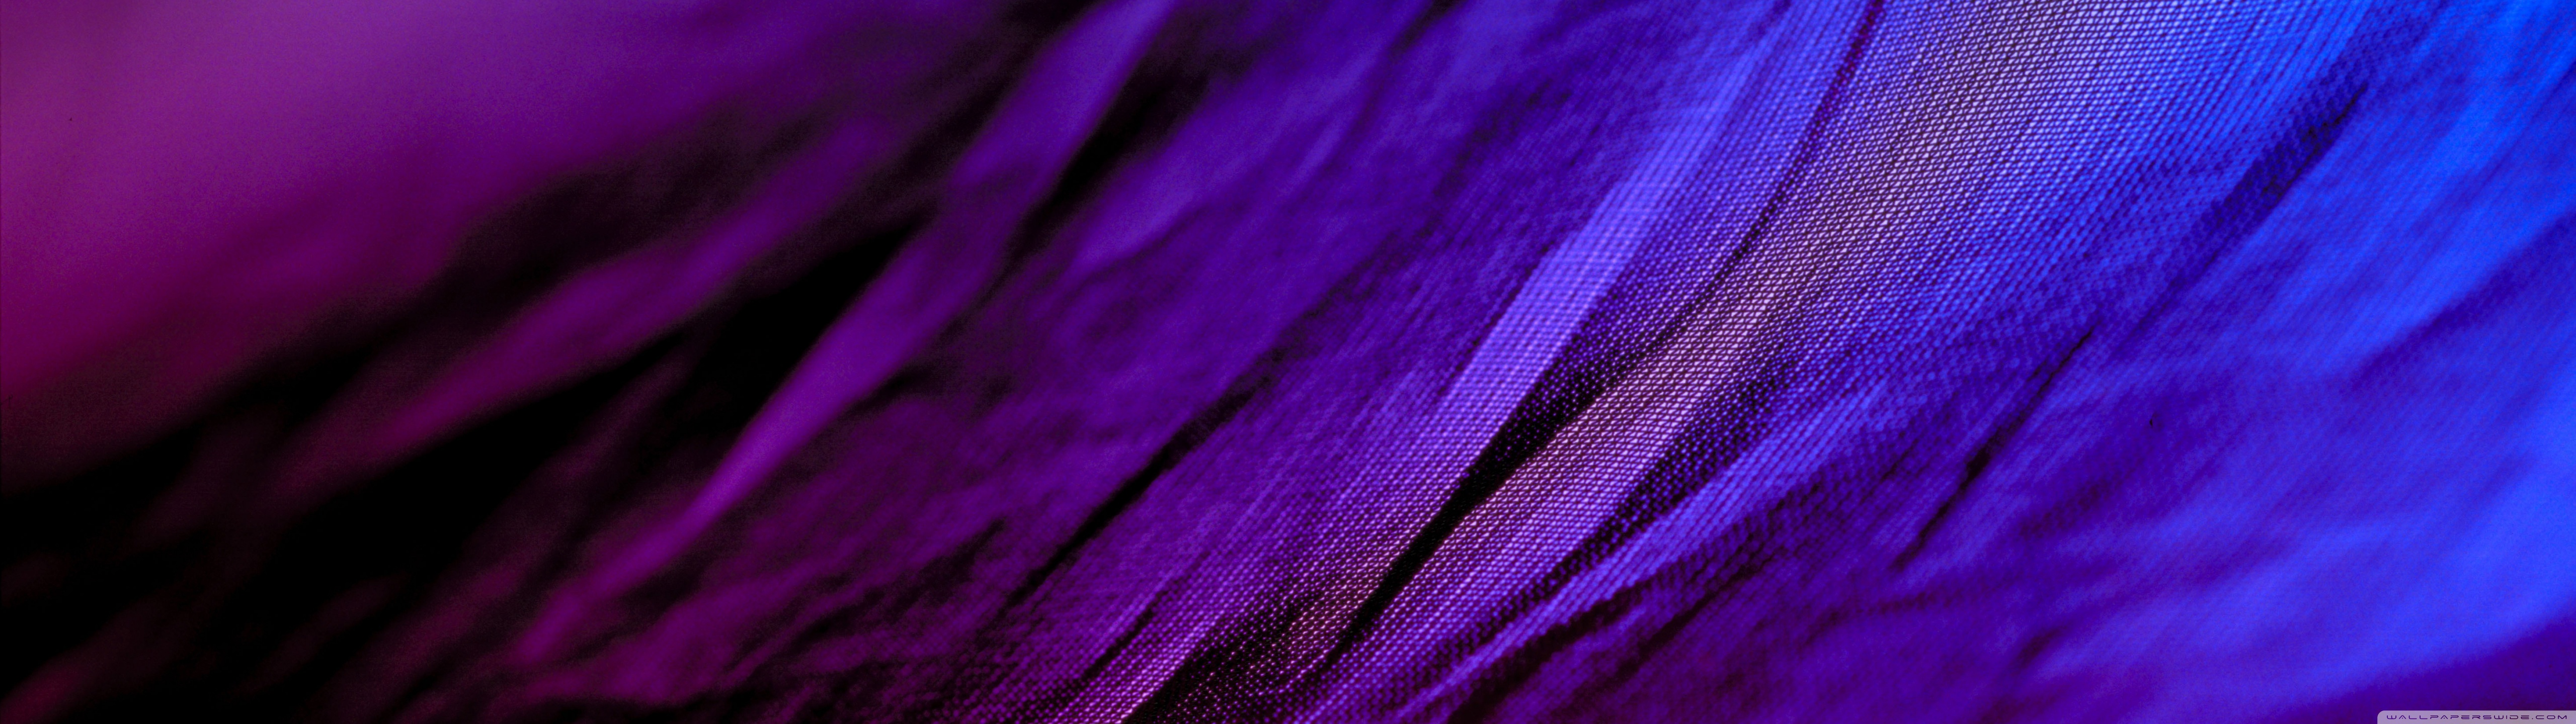 [35+] 5120x1440 Purple Wallpapers | WallpaperSafari